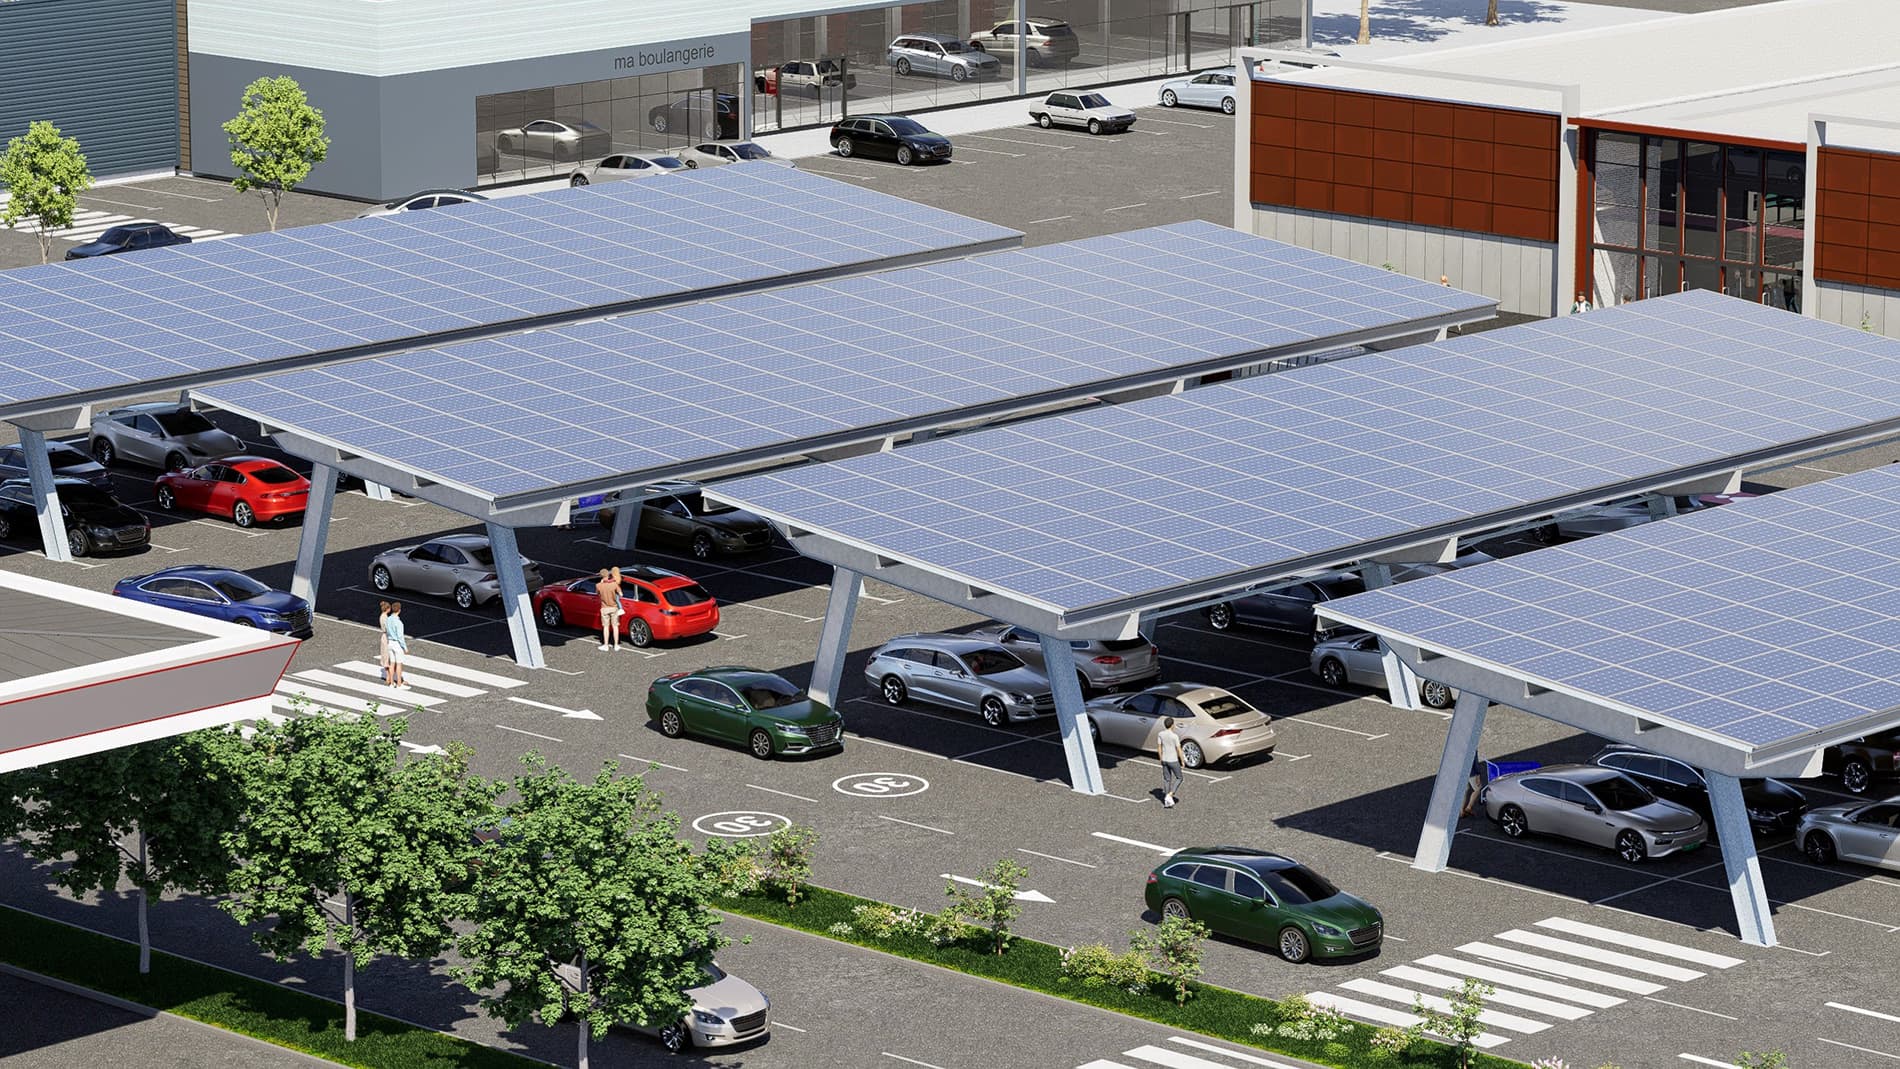 ombriere-panneaux-solaires-parking